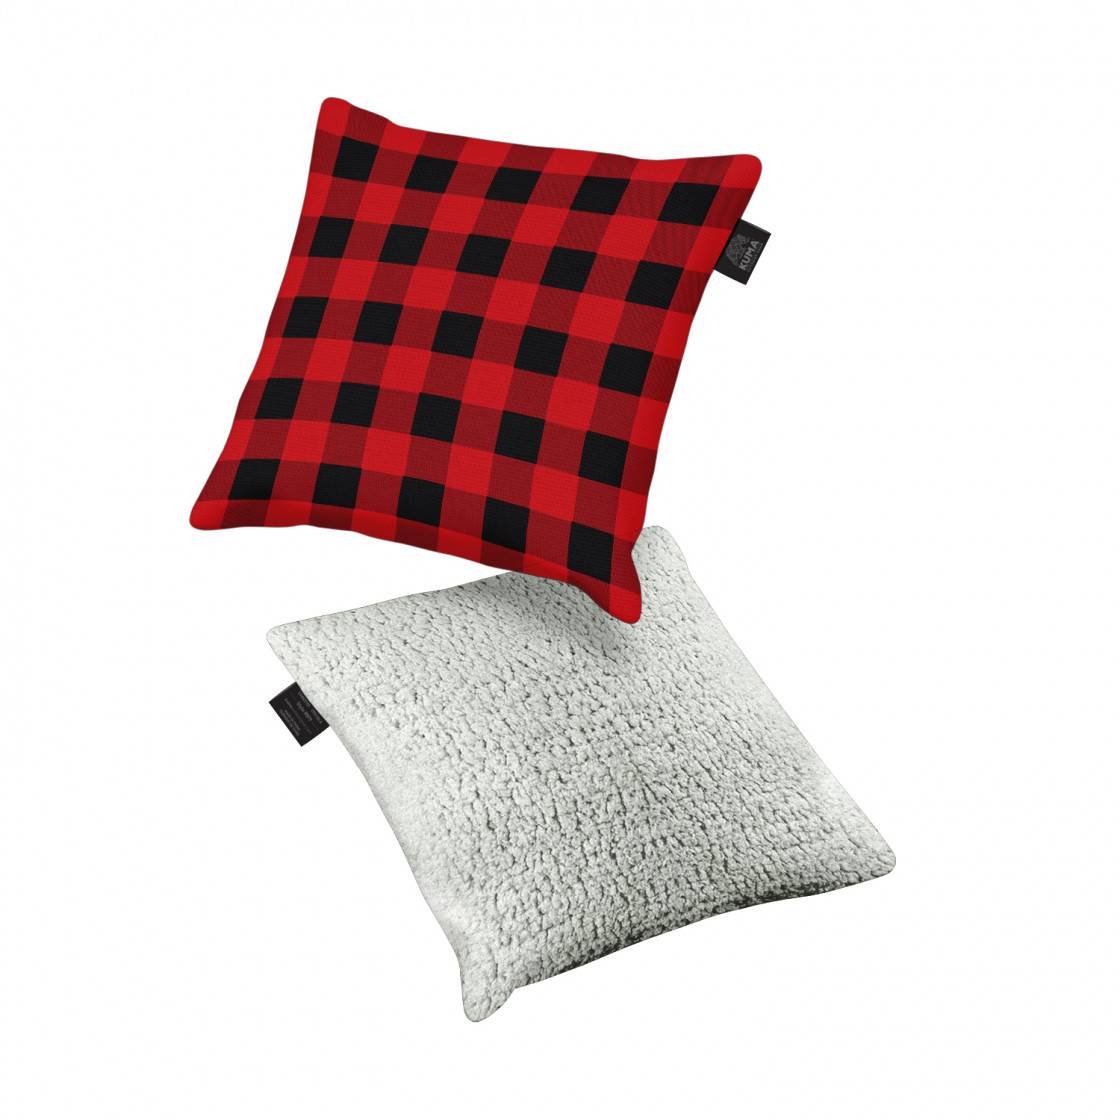 Kuma Square Decor Pillow